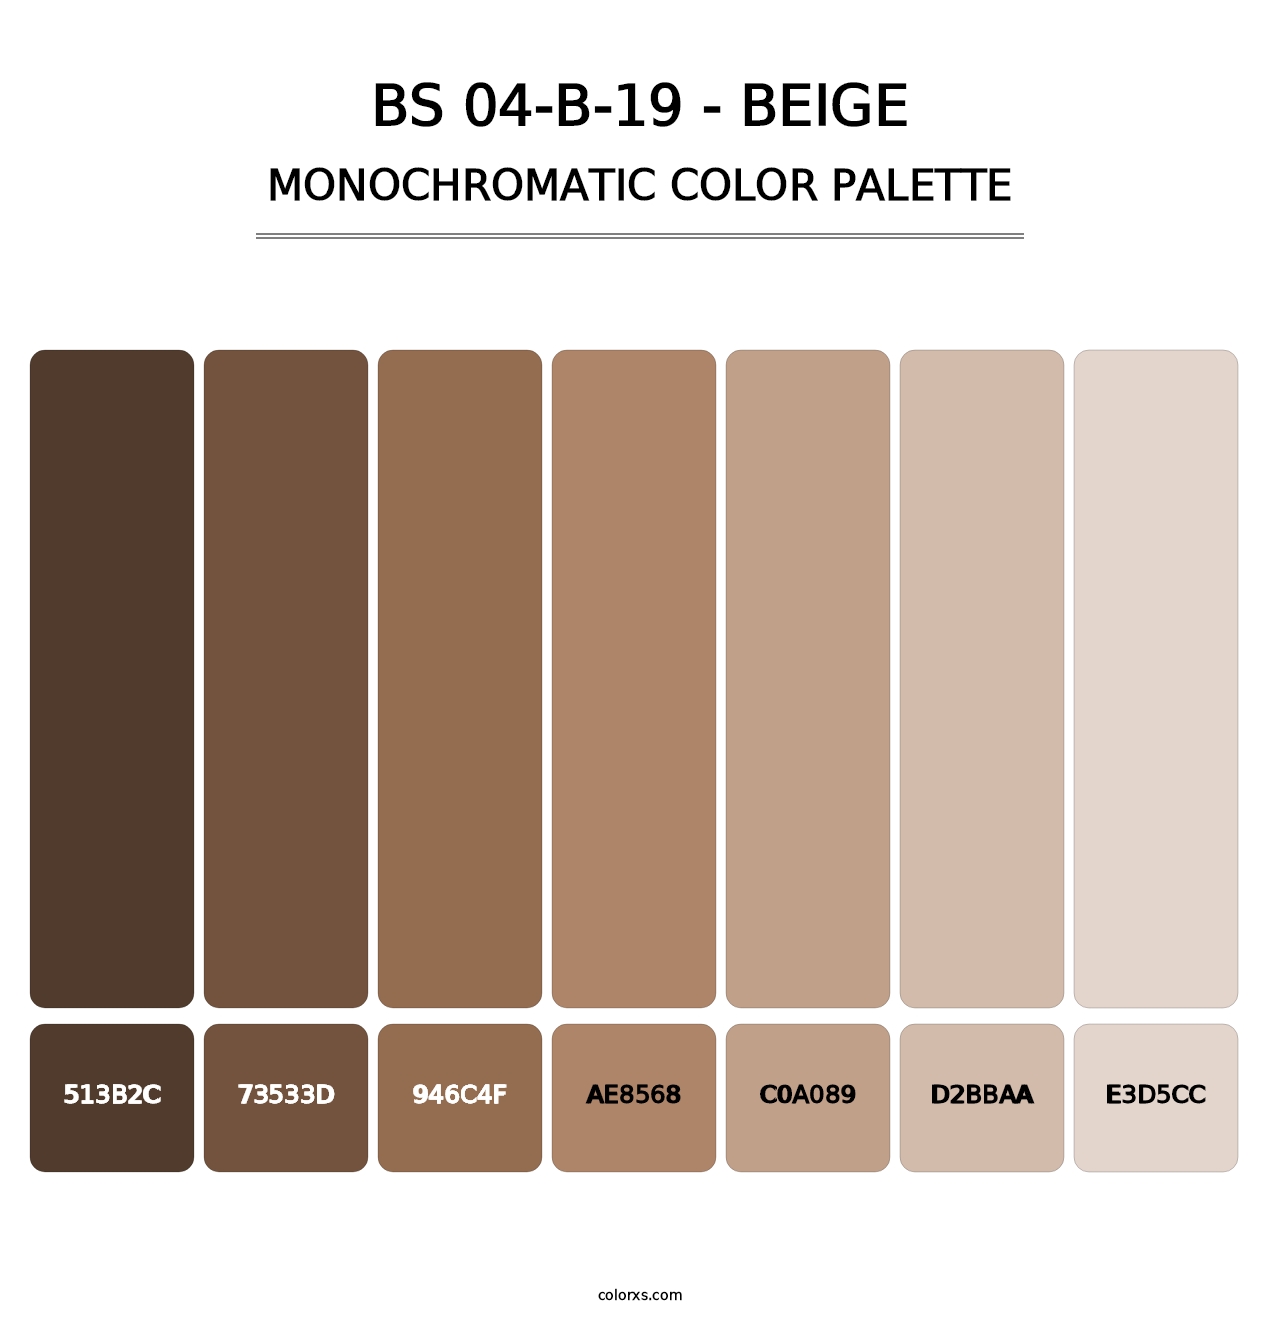 BS 04-B-19 - Beige - Monochromatic Color Palette